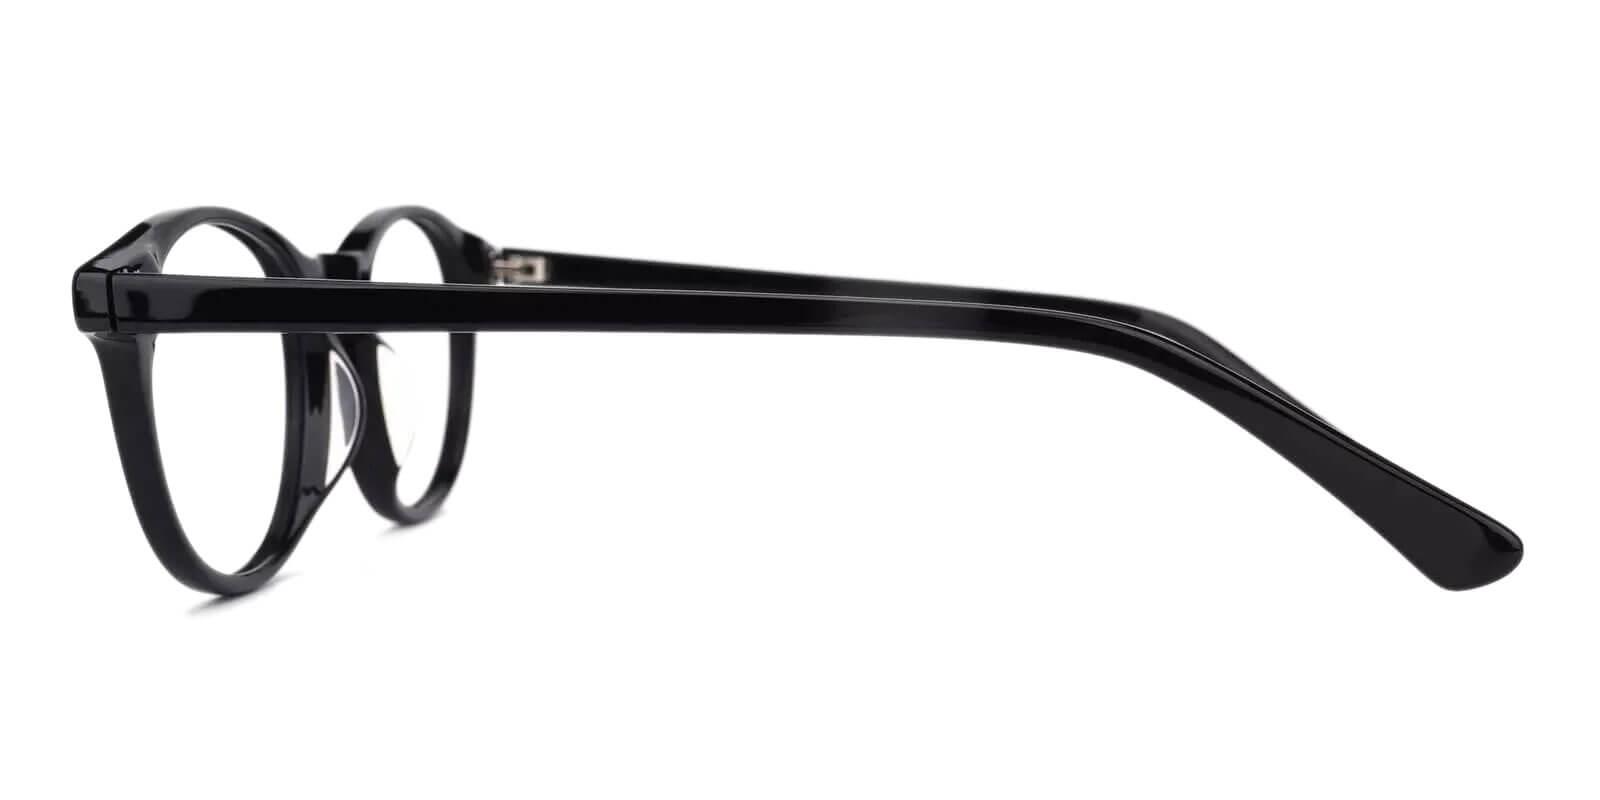 Holly Grove Black Acetate Eyeglasses , UniversalBridgeFit Frames from ABBE Glasses